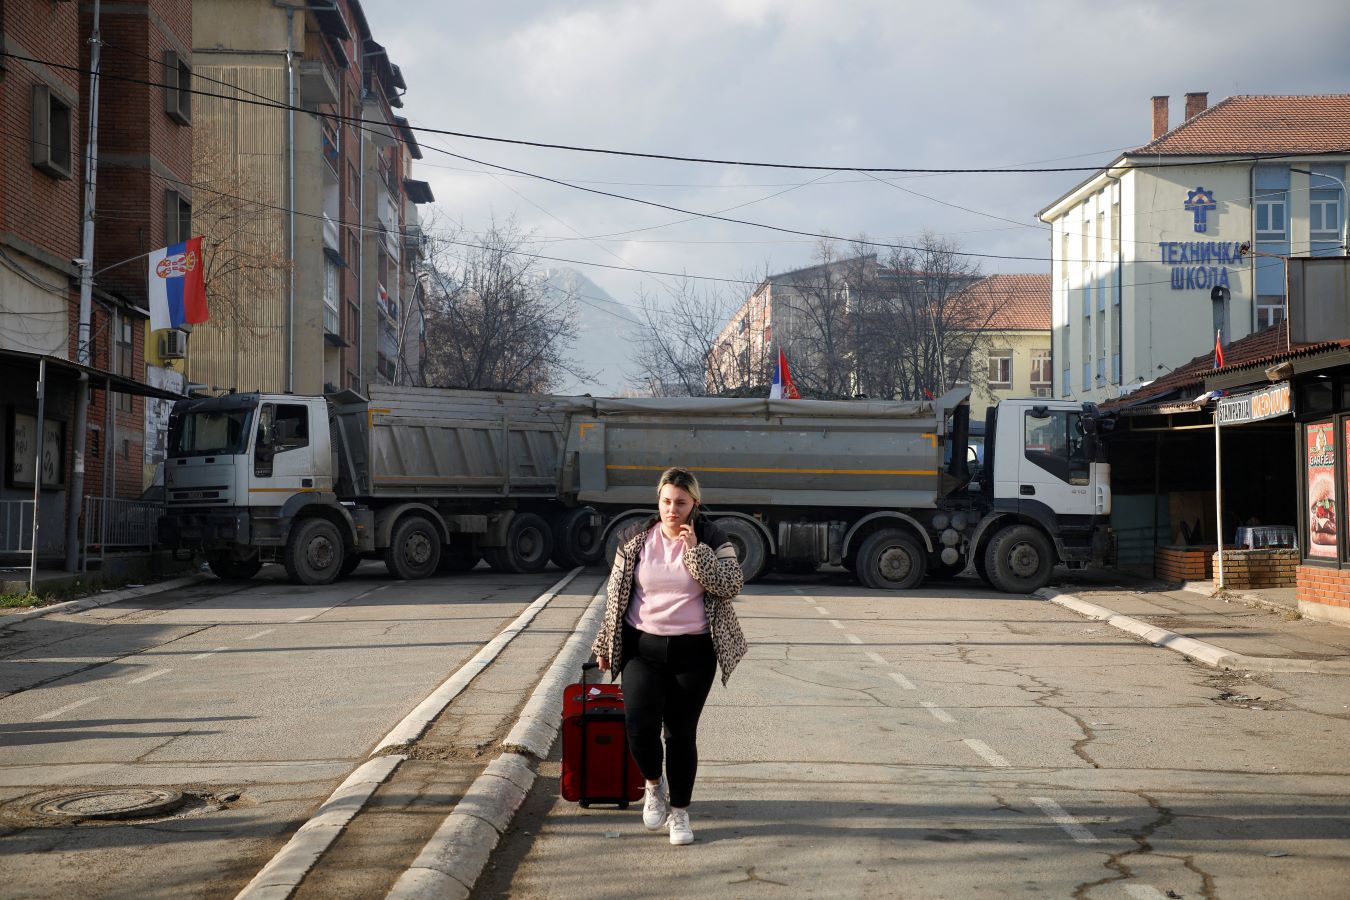 تصاعد التوتر في كوسوفو مع إغلاق معبر حدودي رئيسي مع صربيا